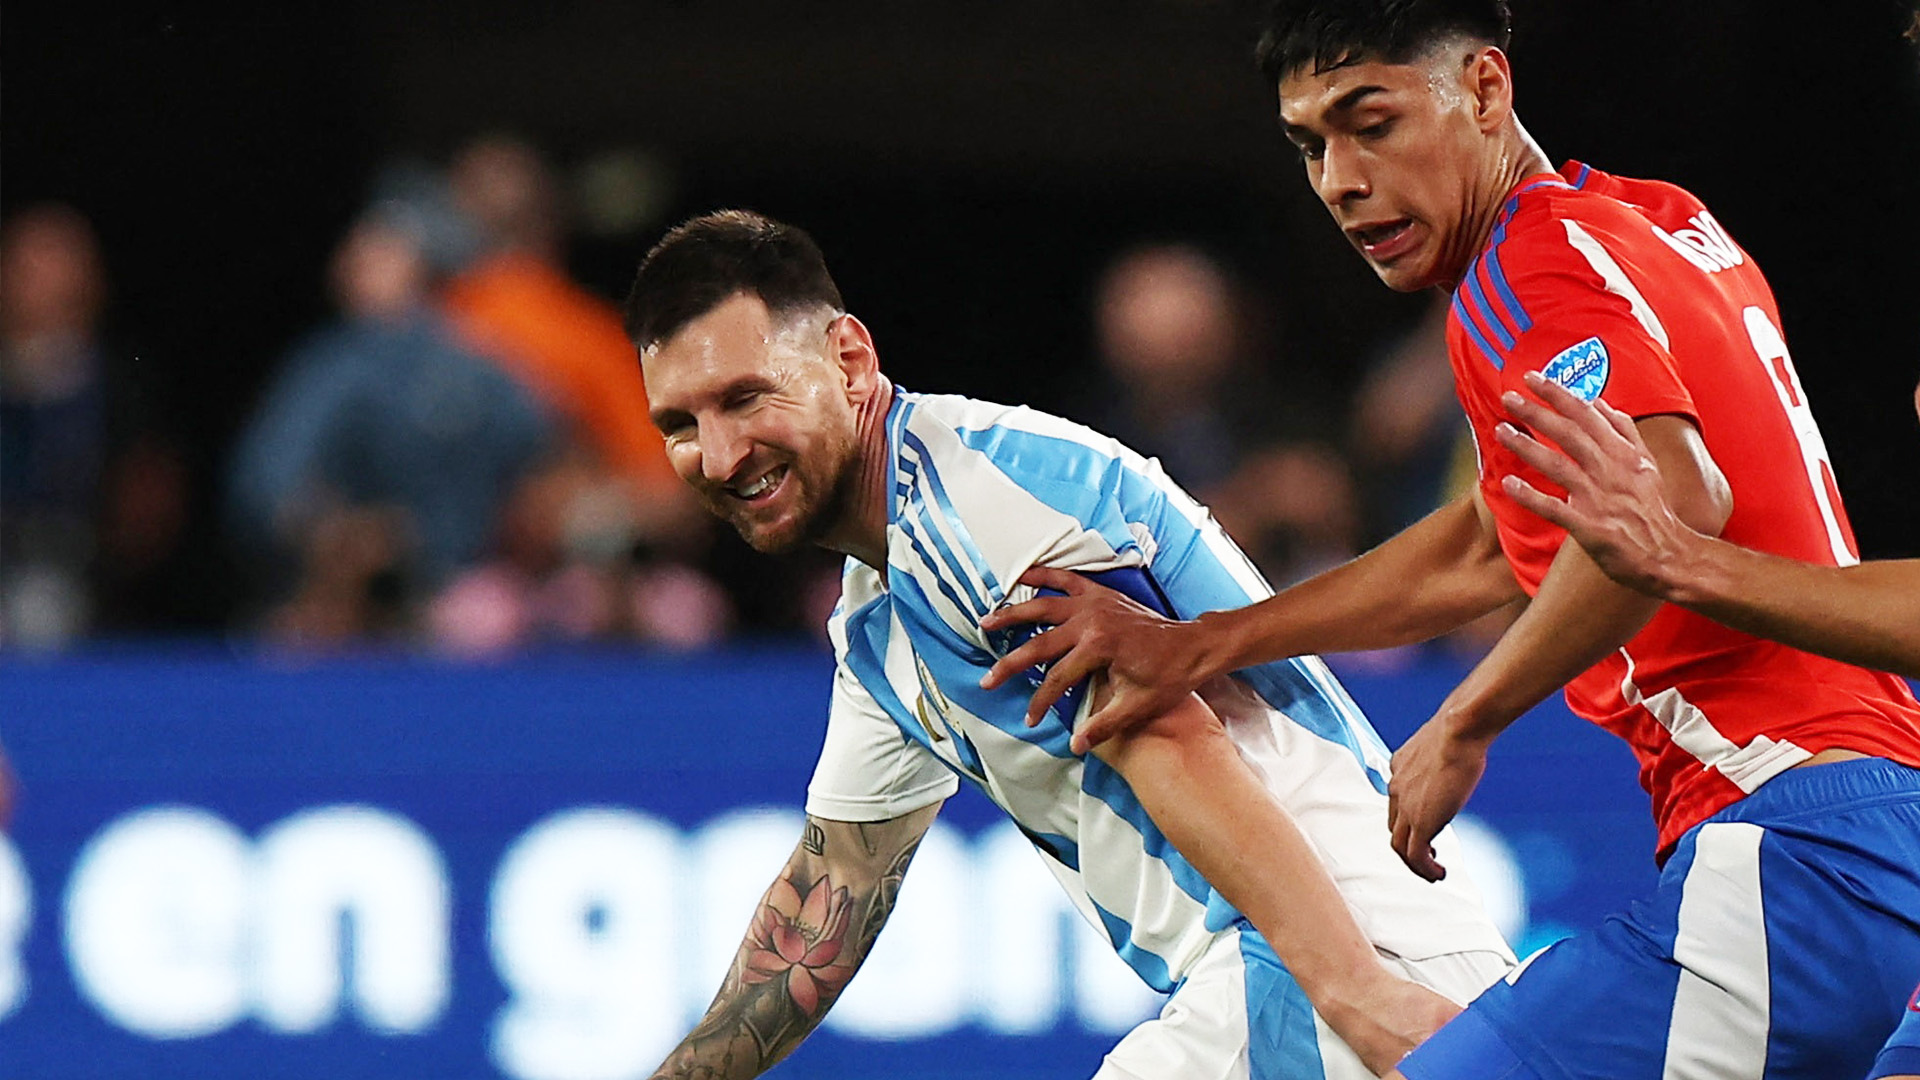 Lionel Messi vs Chile